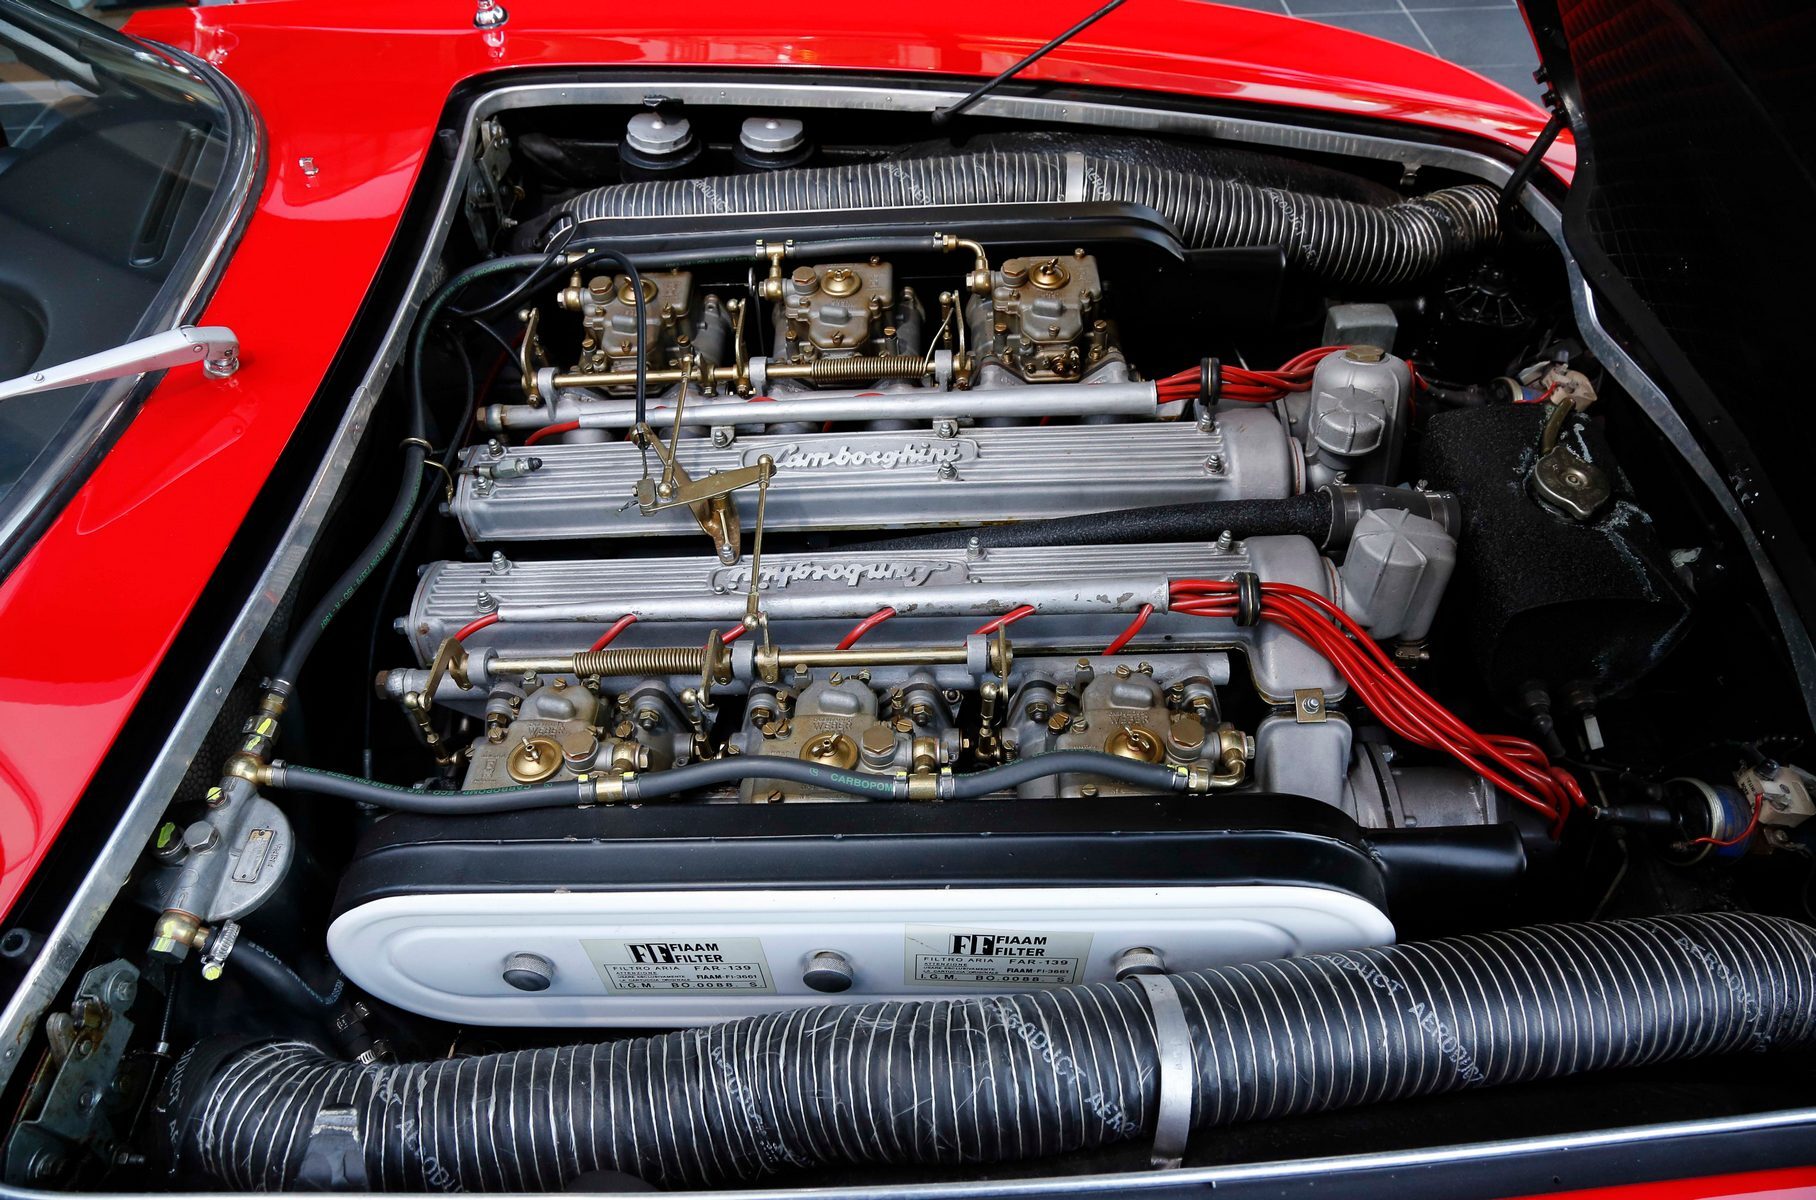 А это V12 конструкции Биззаррини в том виде, в котором он пошёл в серию — под капотом Lamborghini 350 GT. Джанпаоло Даллара снабдил его горизонтальными карбюраторами и обычной системой смазки.